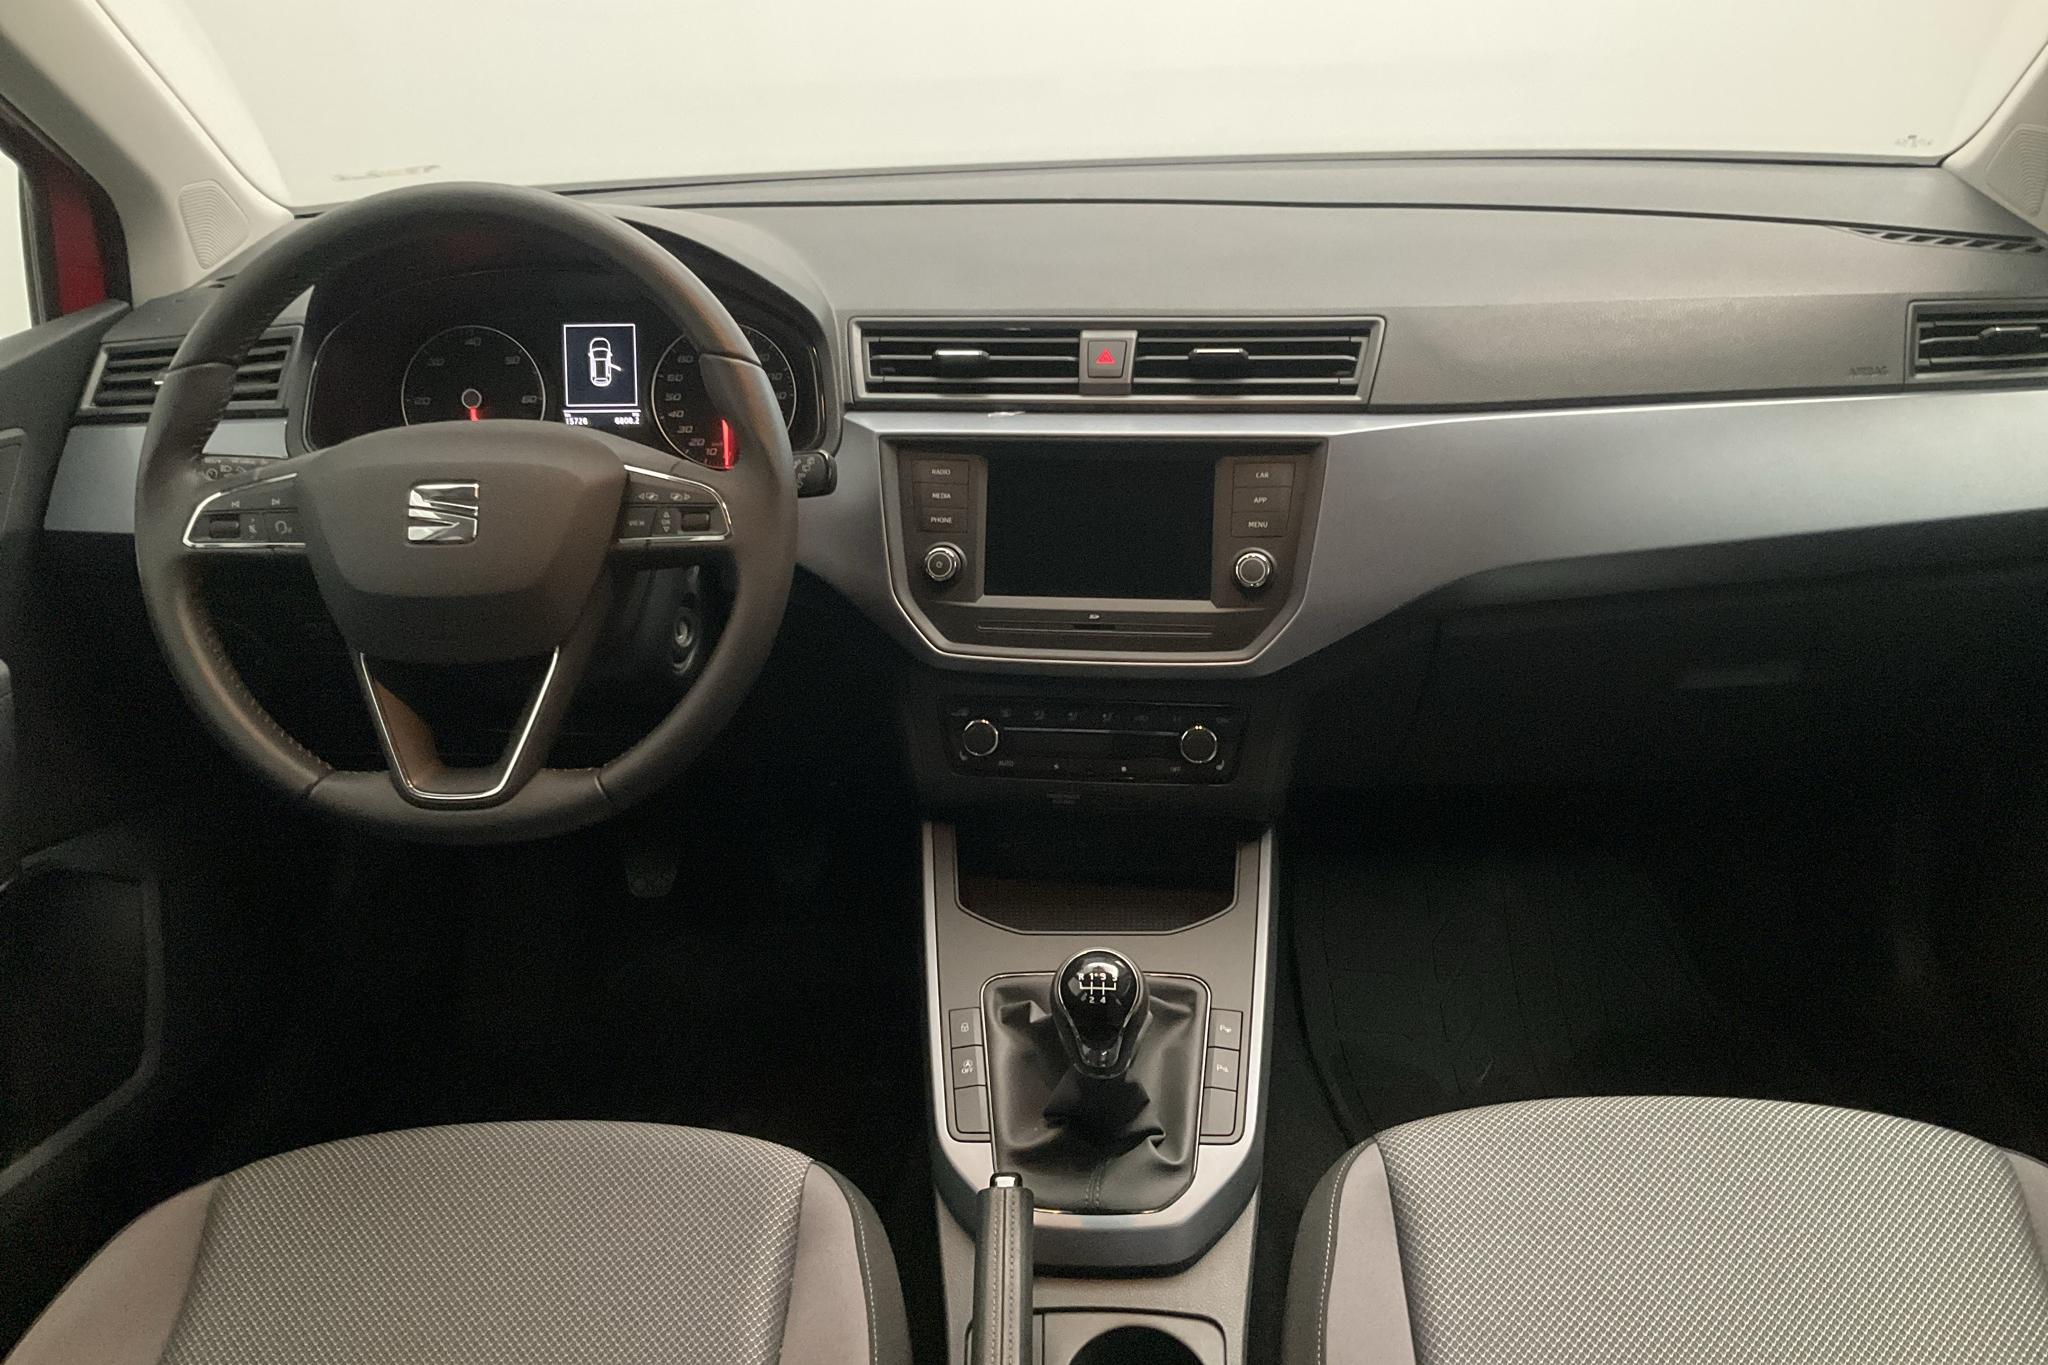 Seat Arona 1.6 TDI 5dr (95hk) - 15 720 km - Manual - red - 2021